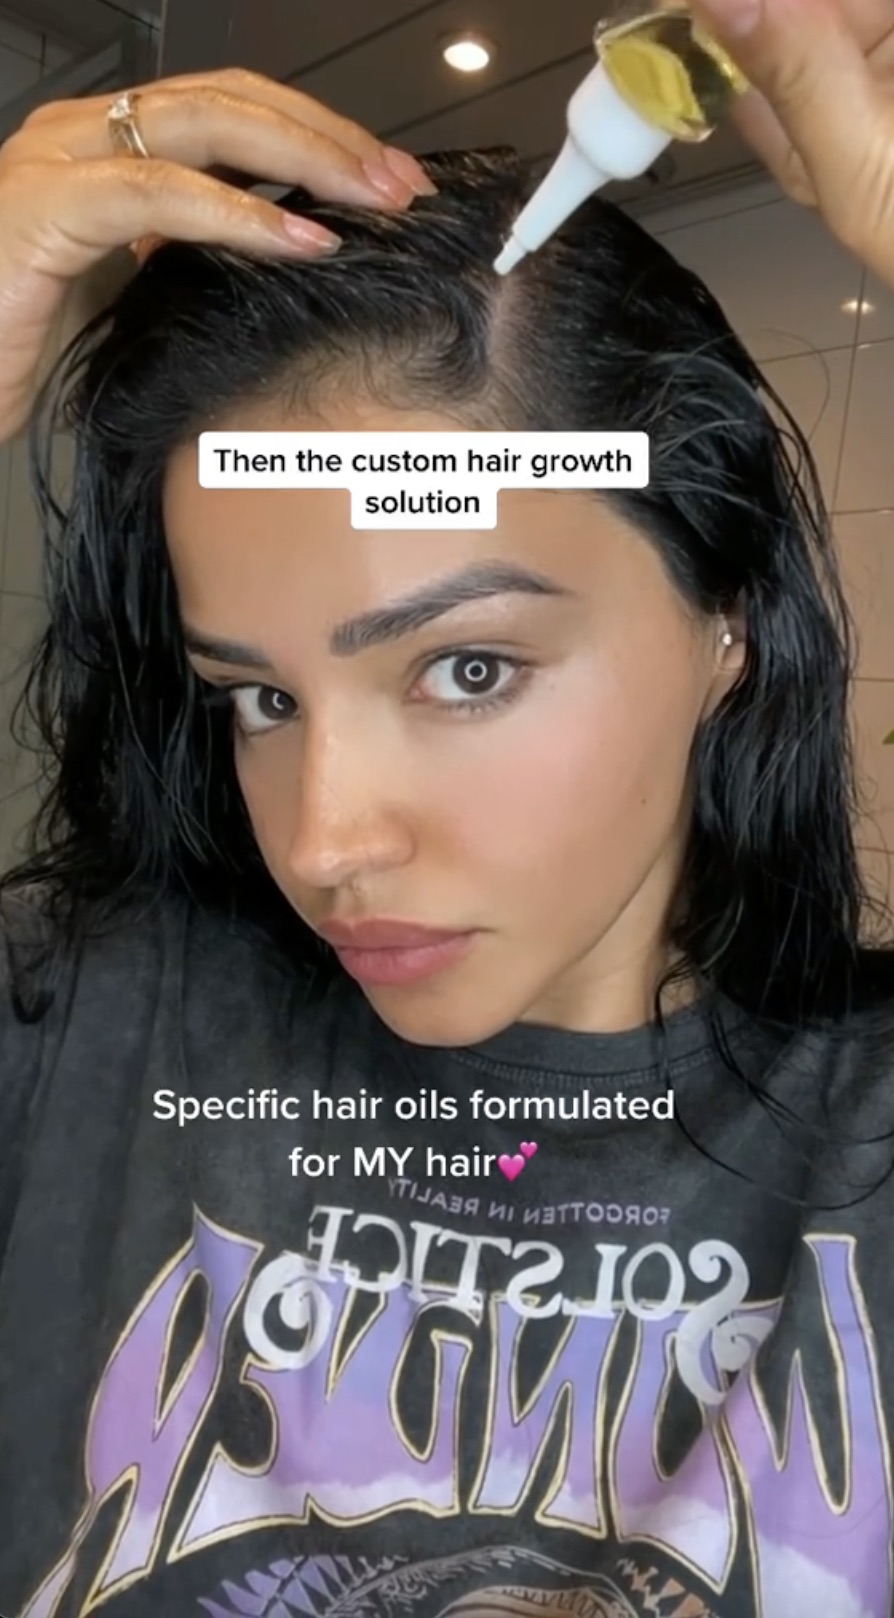 Sie benutzte ein spezielles Haaröl für ihre Kopfhaut